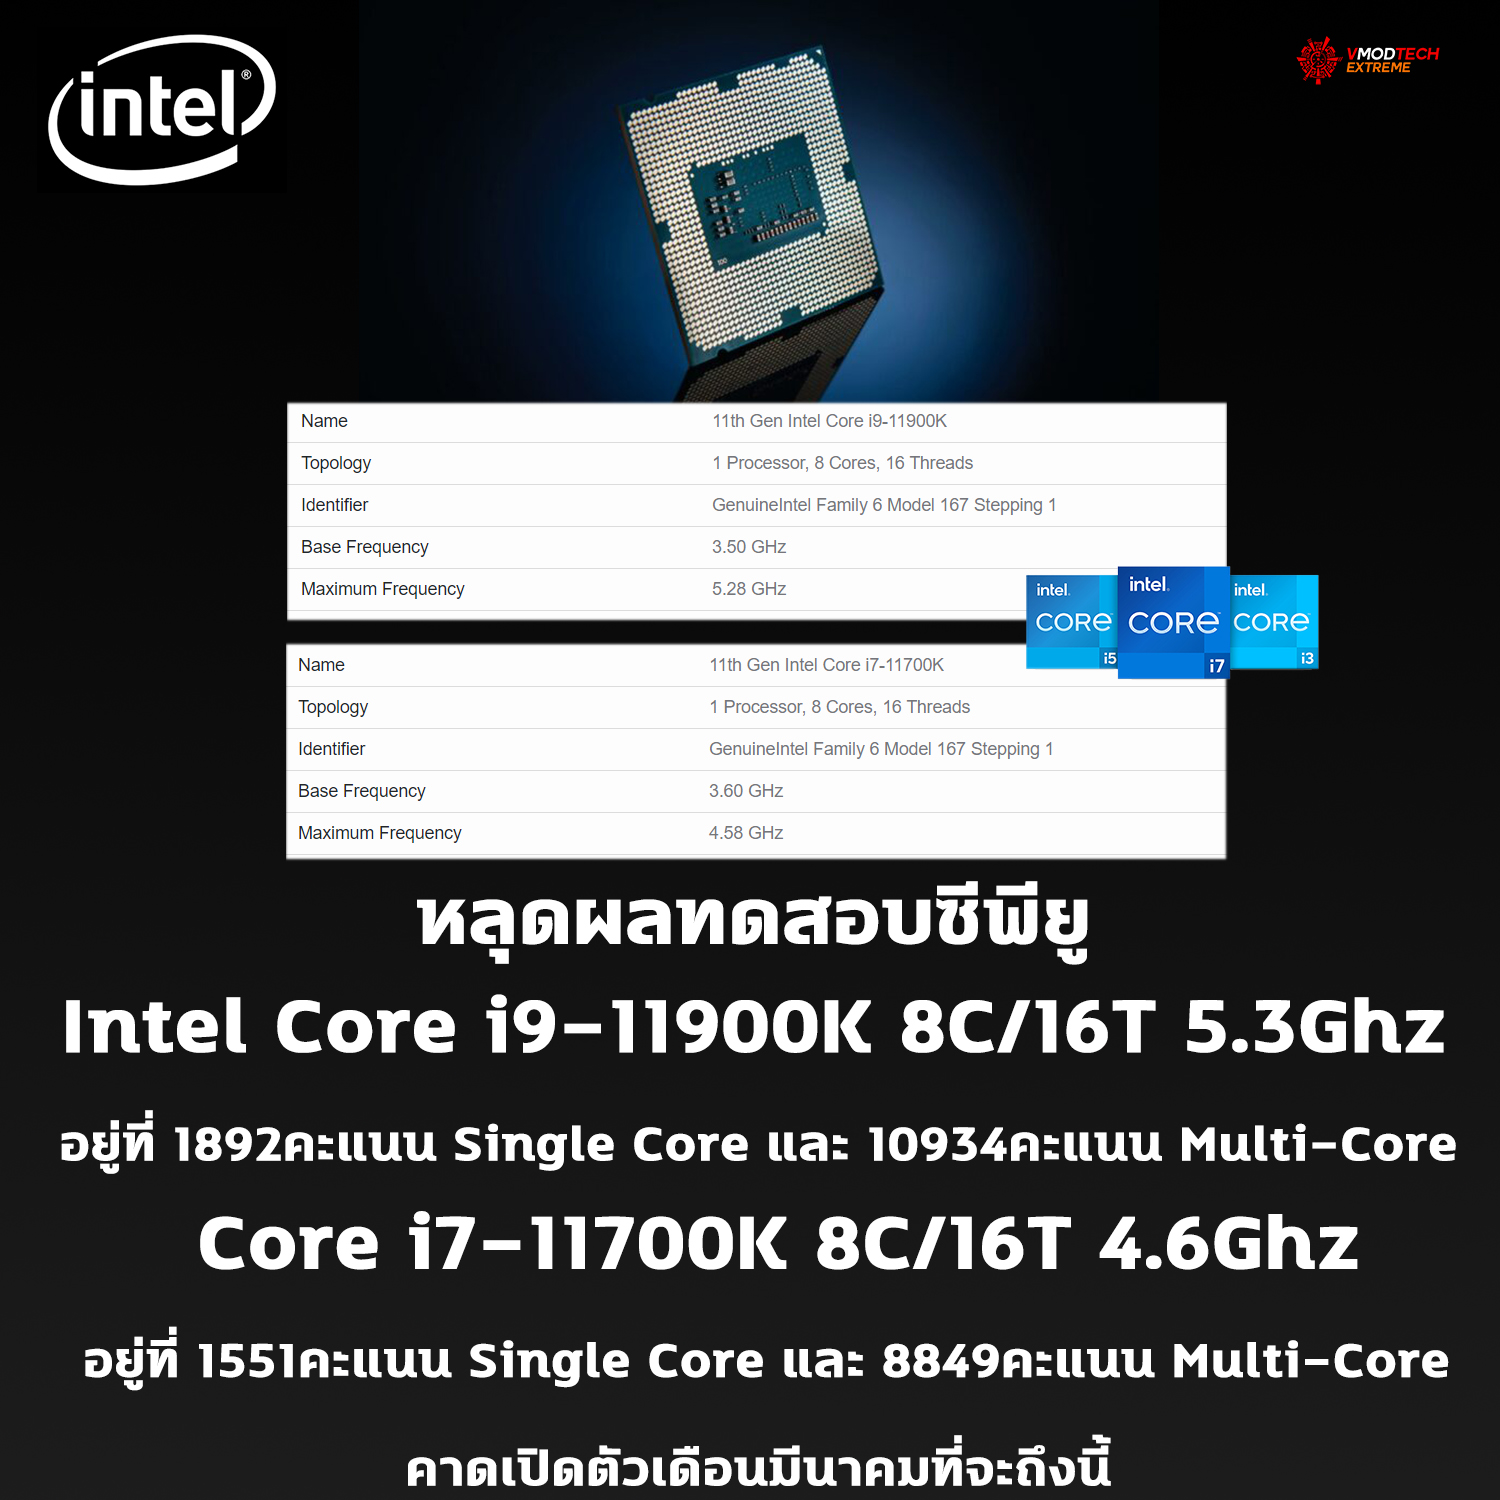 หลุดผลทดสอบซีพียู Intel Core i9-11900K และ Core i7-11700K อย่างไม่เป็นทางการ